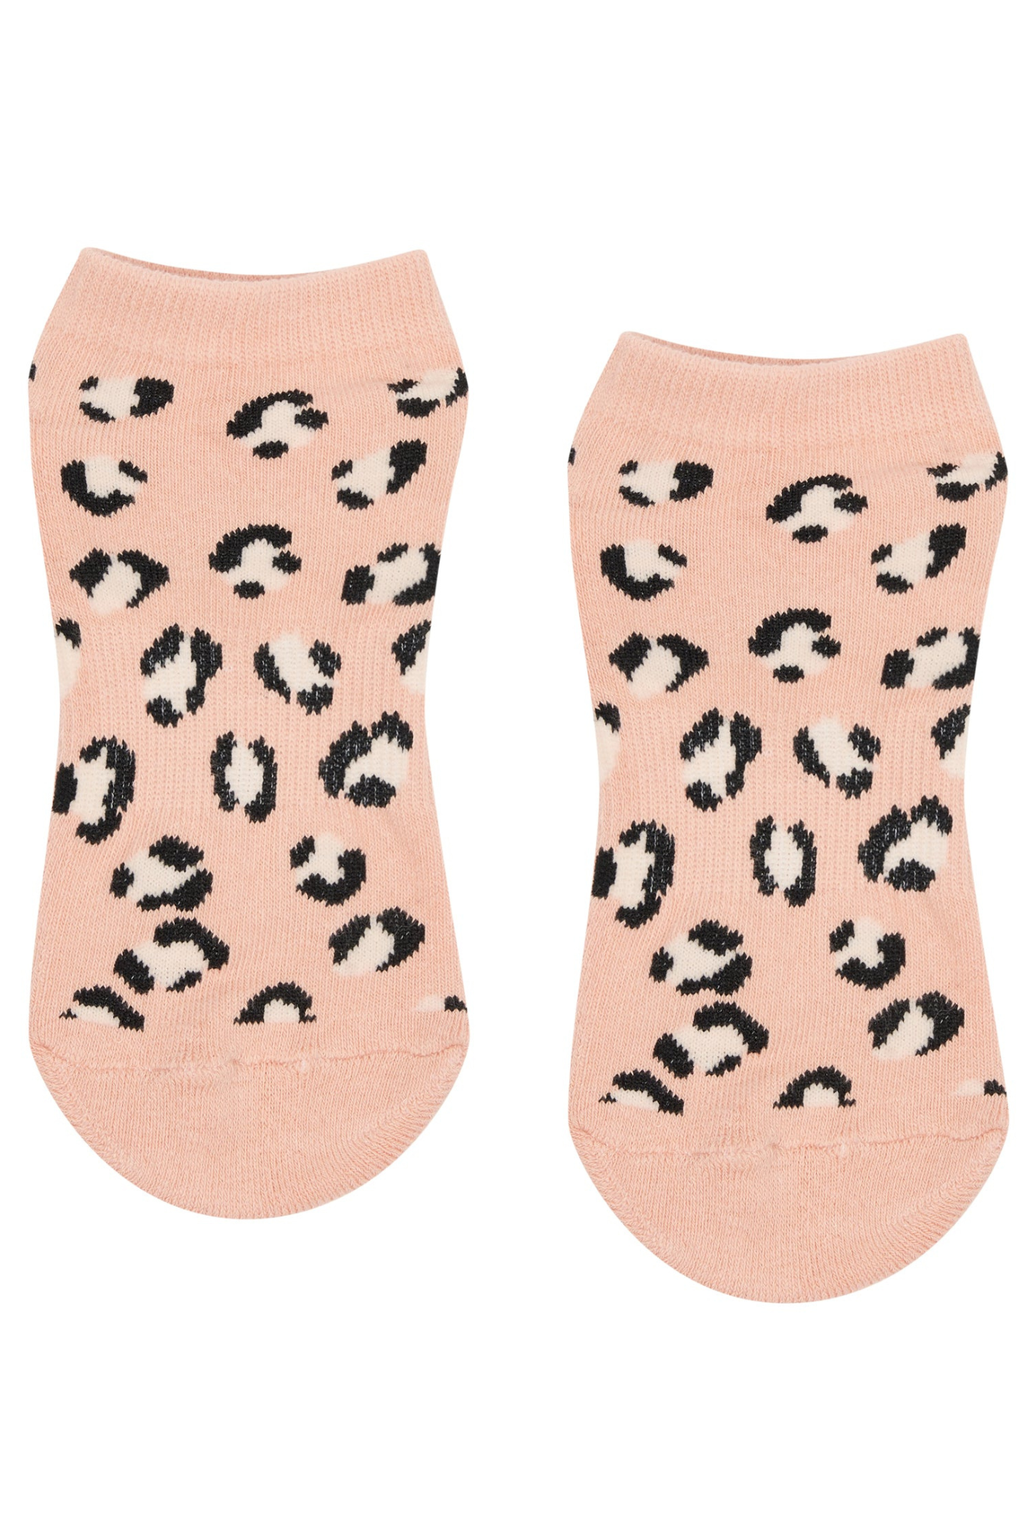 Classic Low Rise Grip Socks - Peach Cheetah